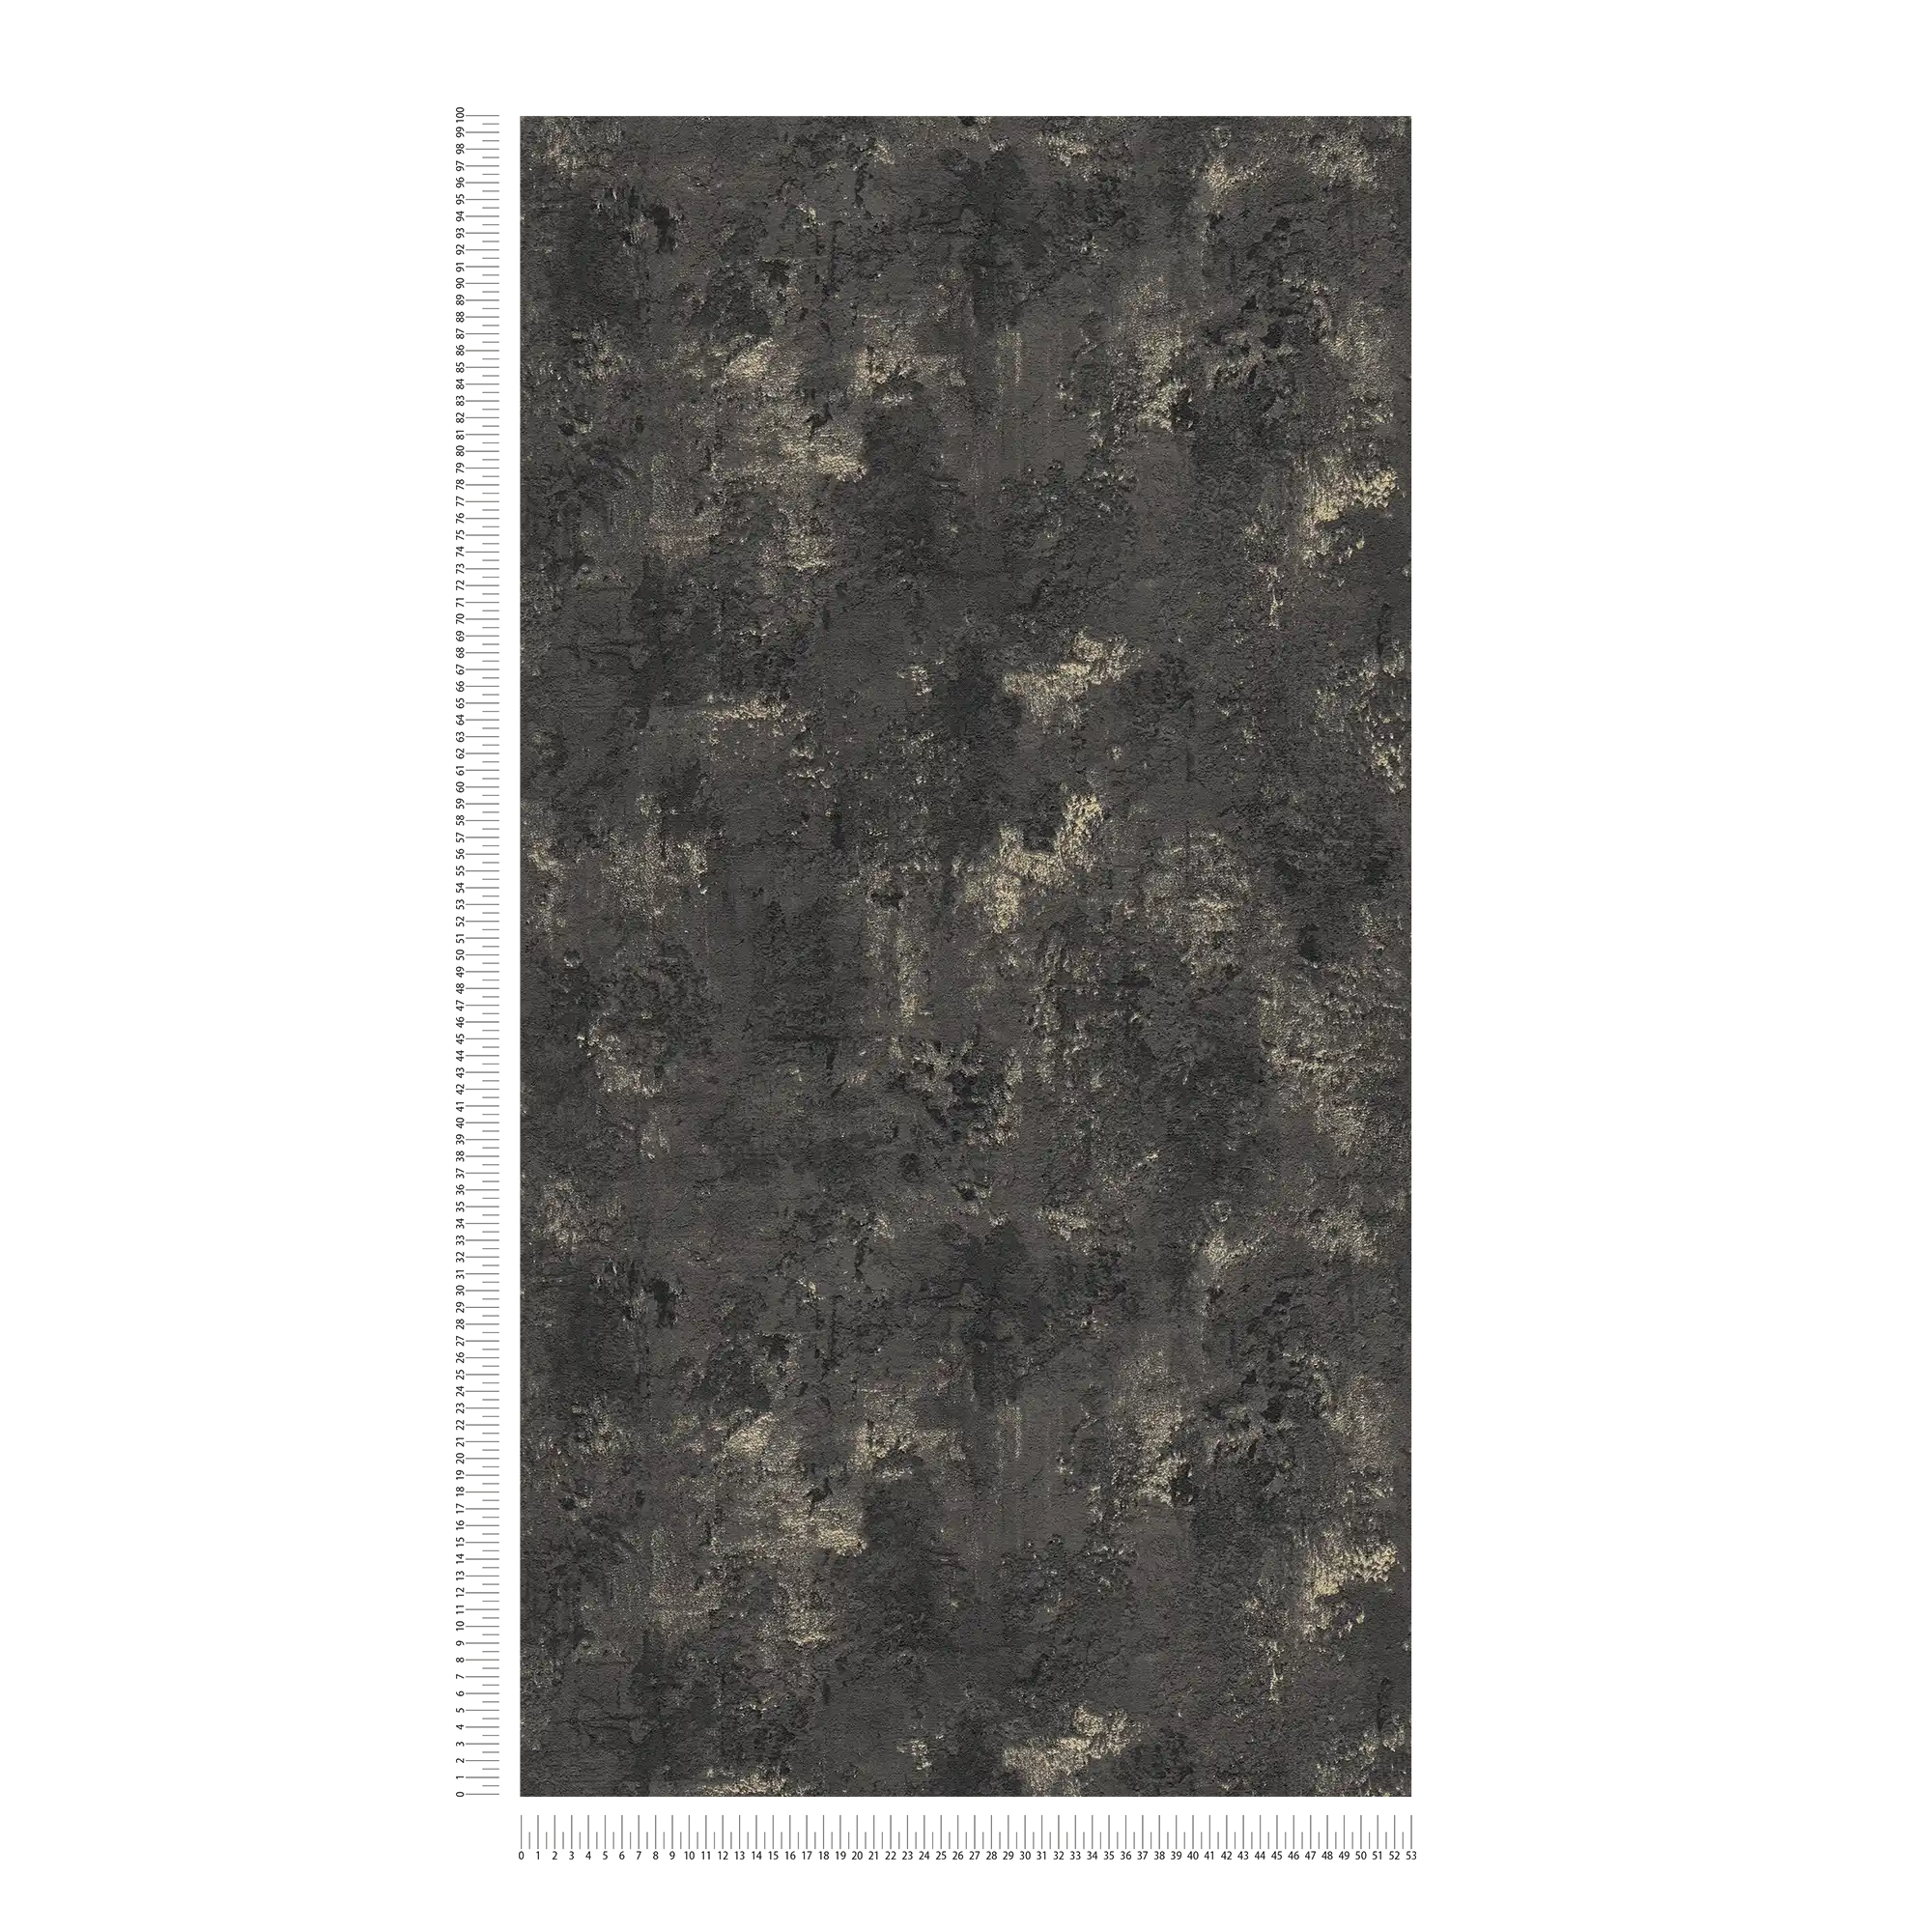             Papier peint noir structuré avec aspect rustique du béton
        